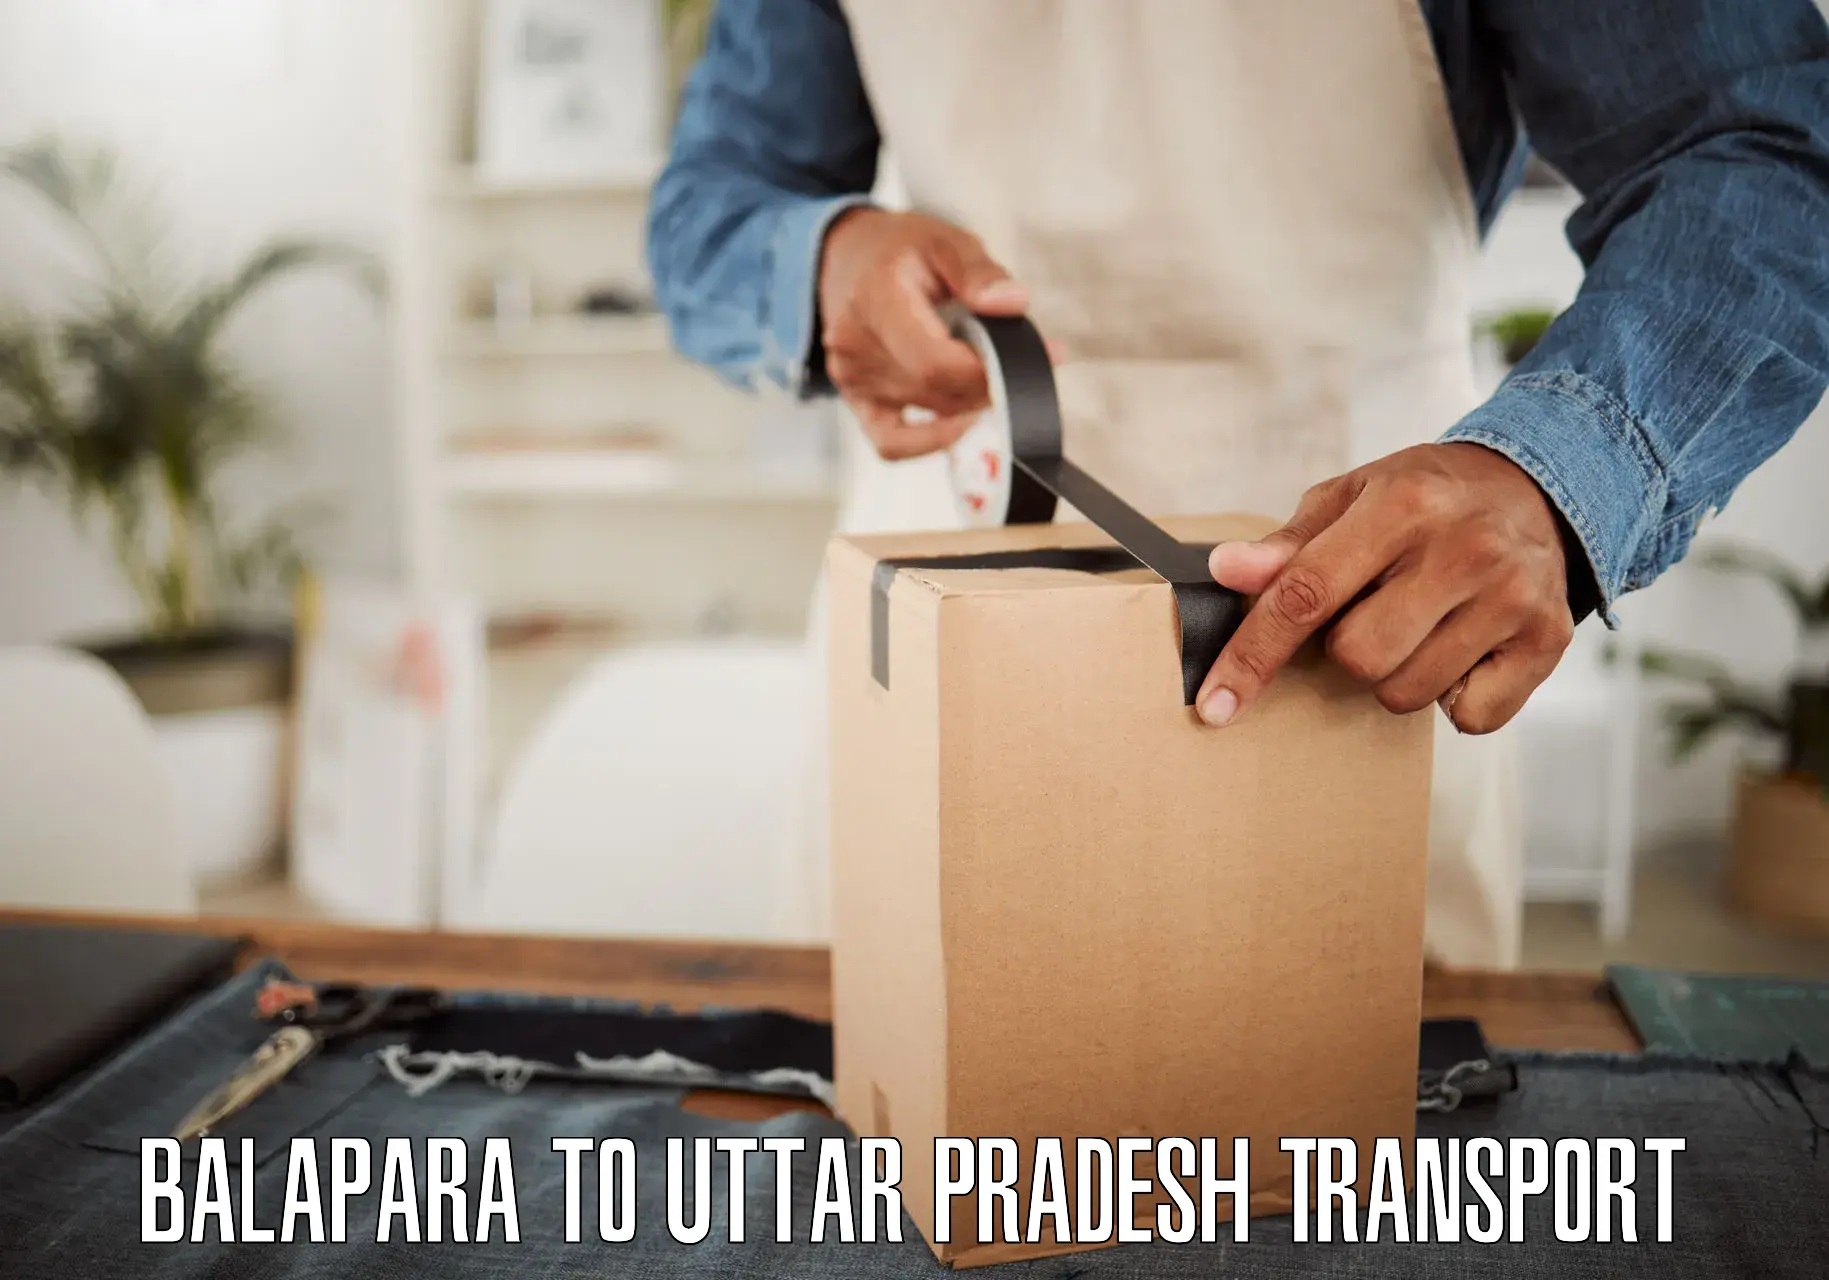 Online transport Balapara to Ayodhya